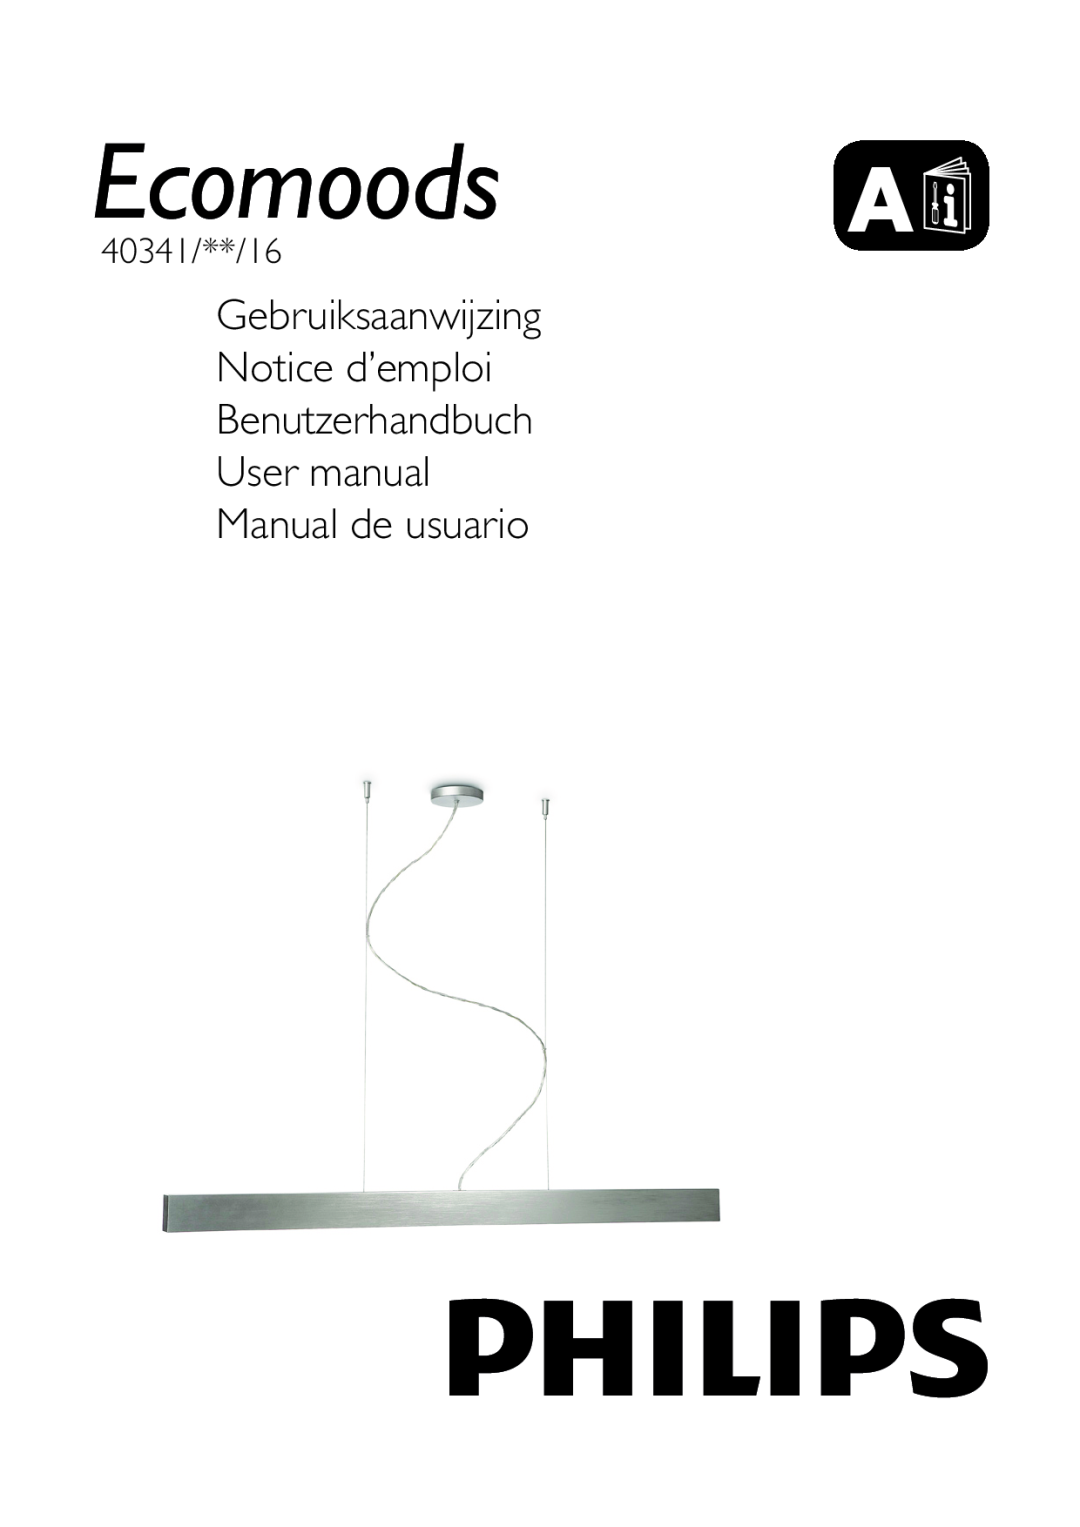 Philips 40341/48/16 user manual Gebruiksaanwijzing Notice d’emploi, Benutzerhandbuch User manual Manual de usuario 